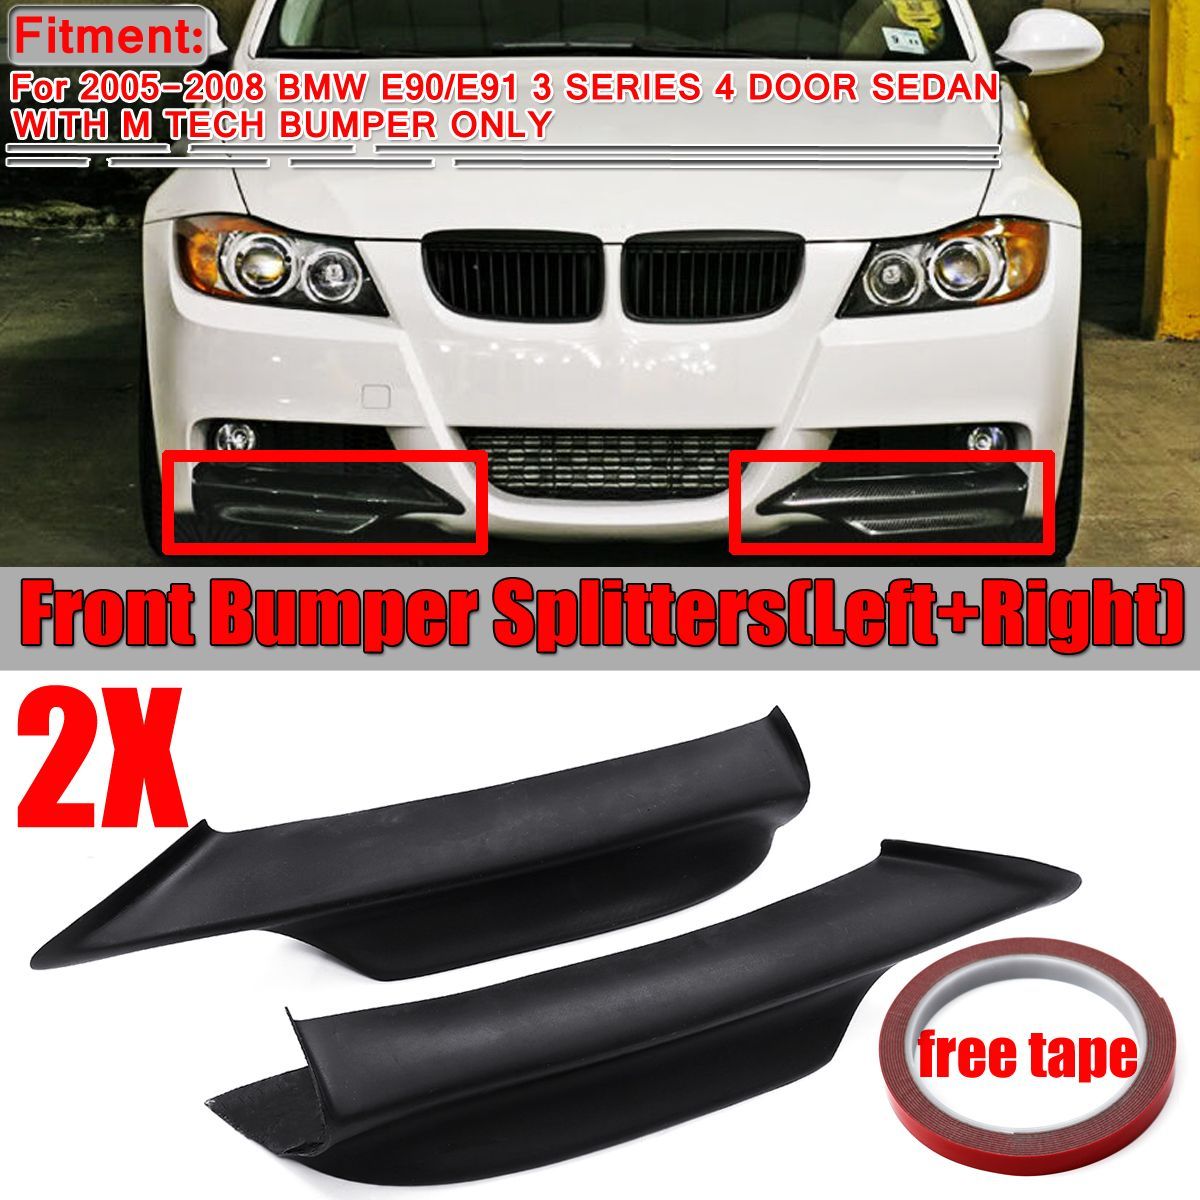 Black-Front-Bumper-Lip-Splitter-Diffuser-Protector-For-BMW-E90-E91-3-Series-M-Tech-2005-2008-1561504